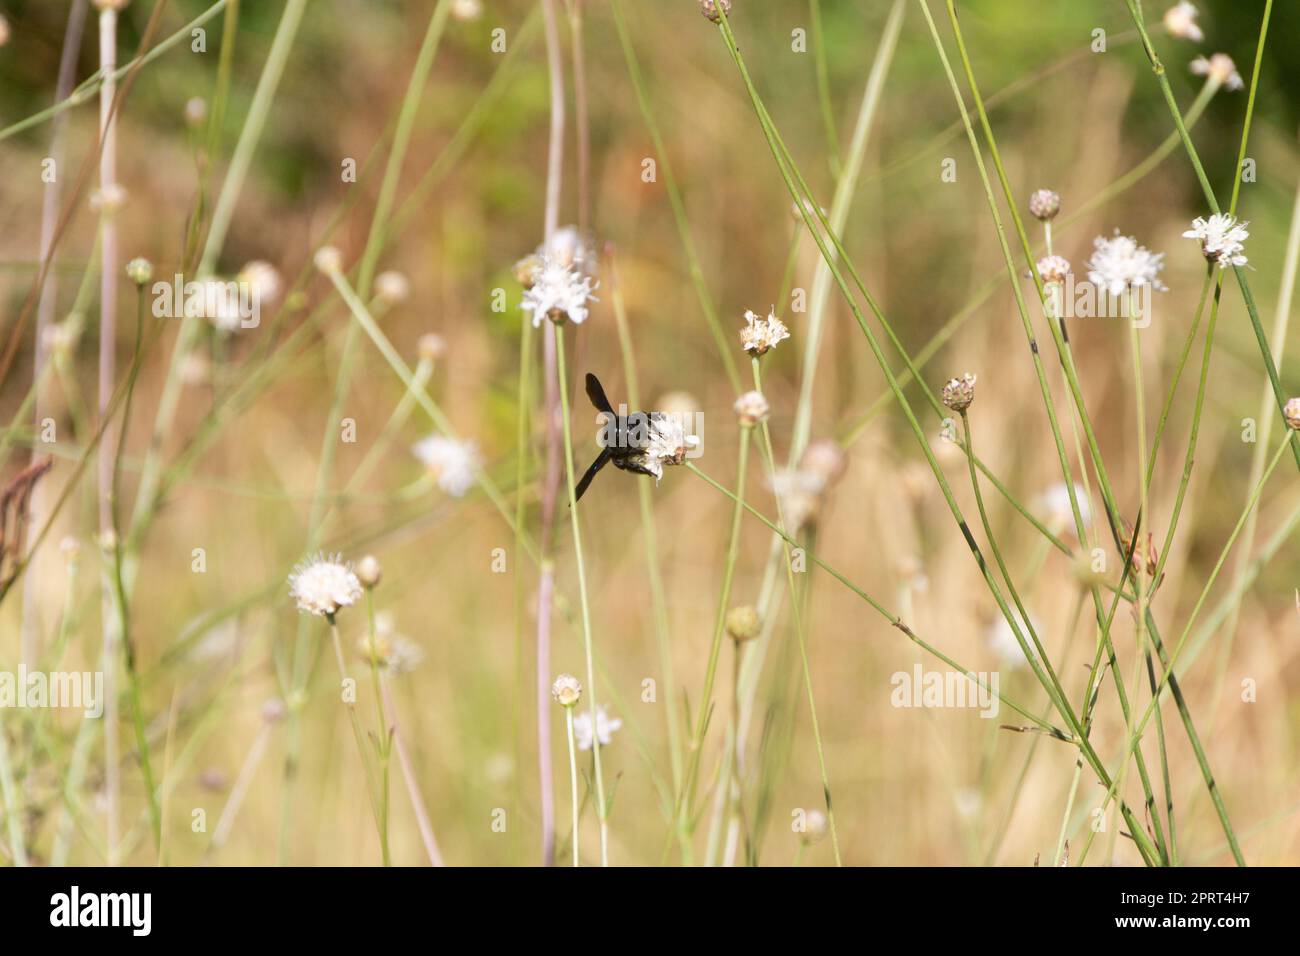 Frontalansicht einer schwarzen Hummel, die eine kleine weiße Blume bestäubt, umgeben von grünen Stämmen. Stockfoto